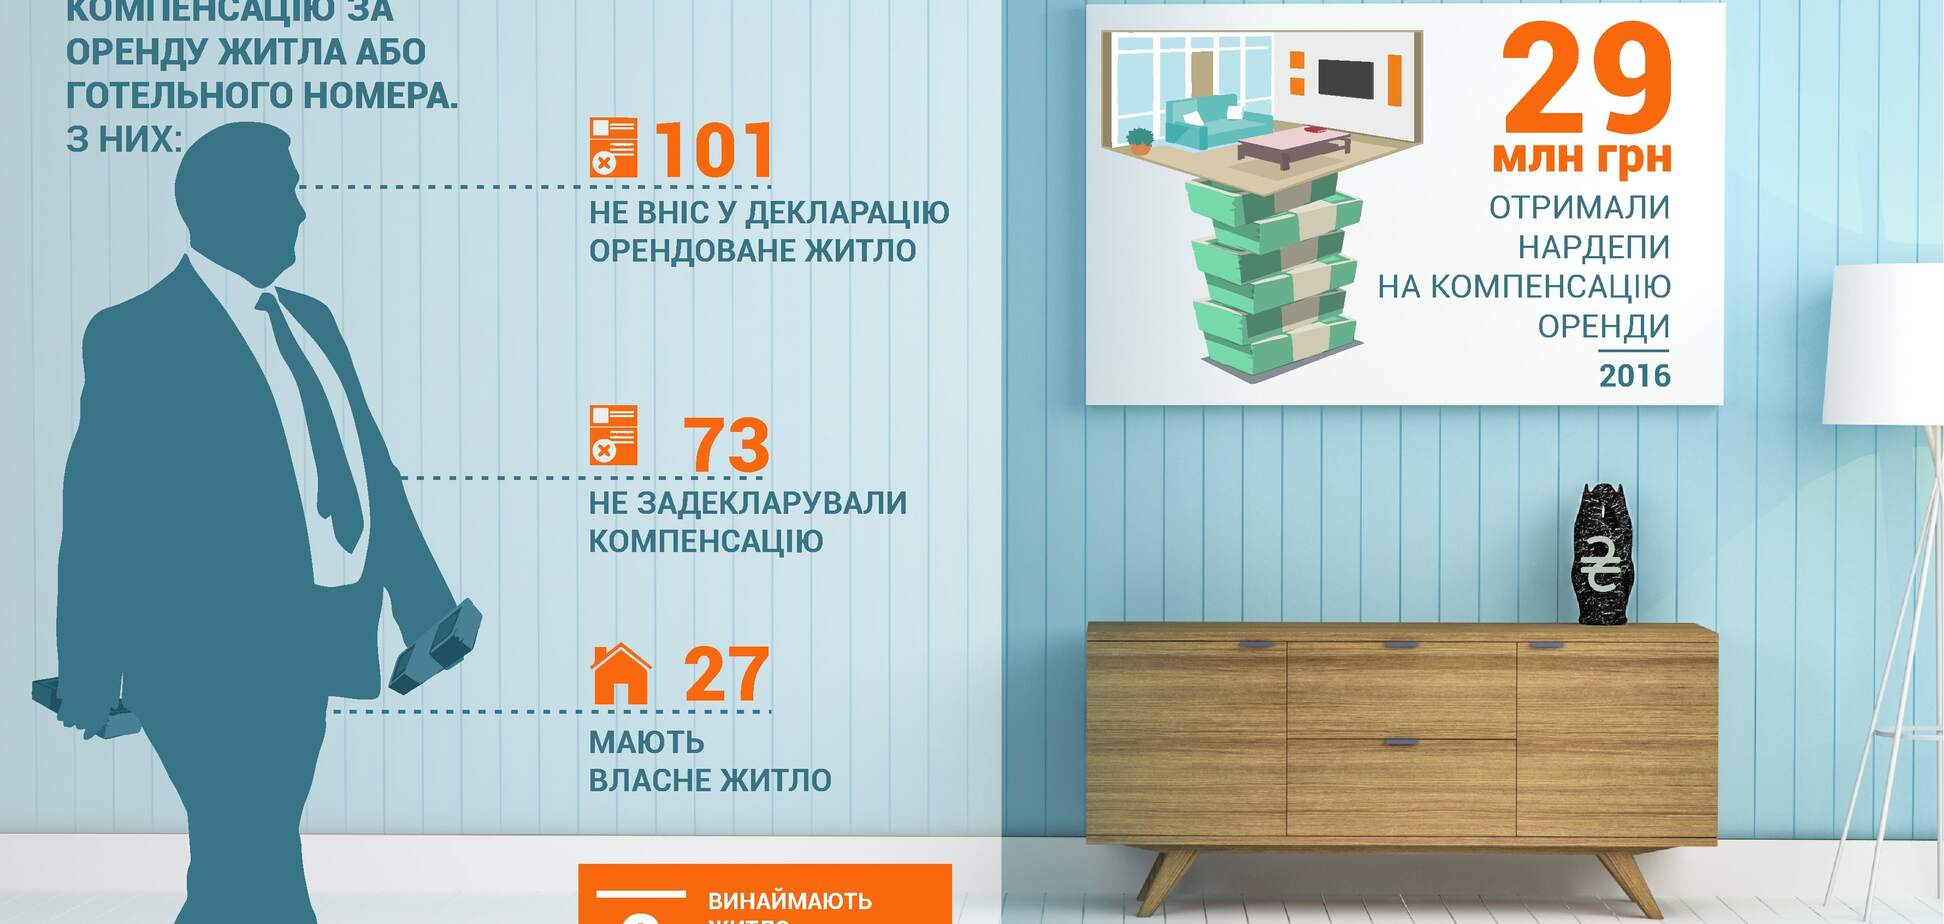 Не гидують навіть мільйонери: стало відомо, скільки нардепів отримали гроші на готель, маючи житло в Києві